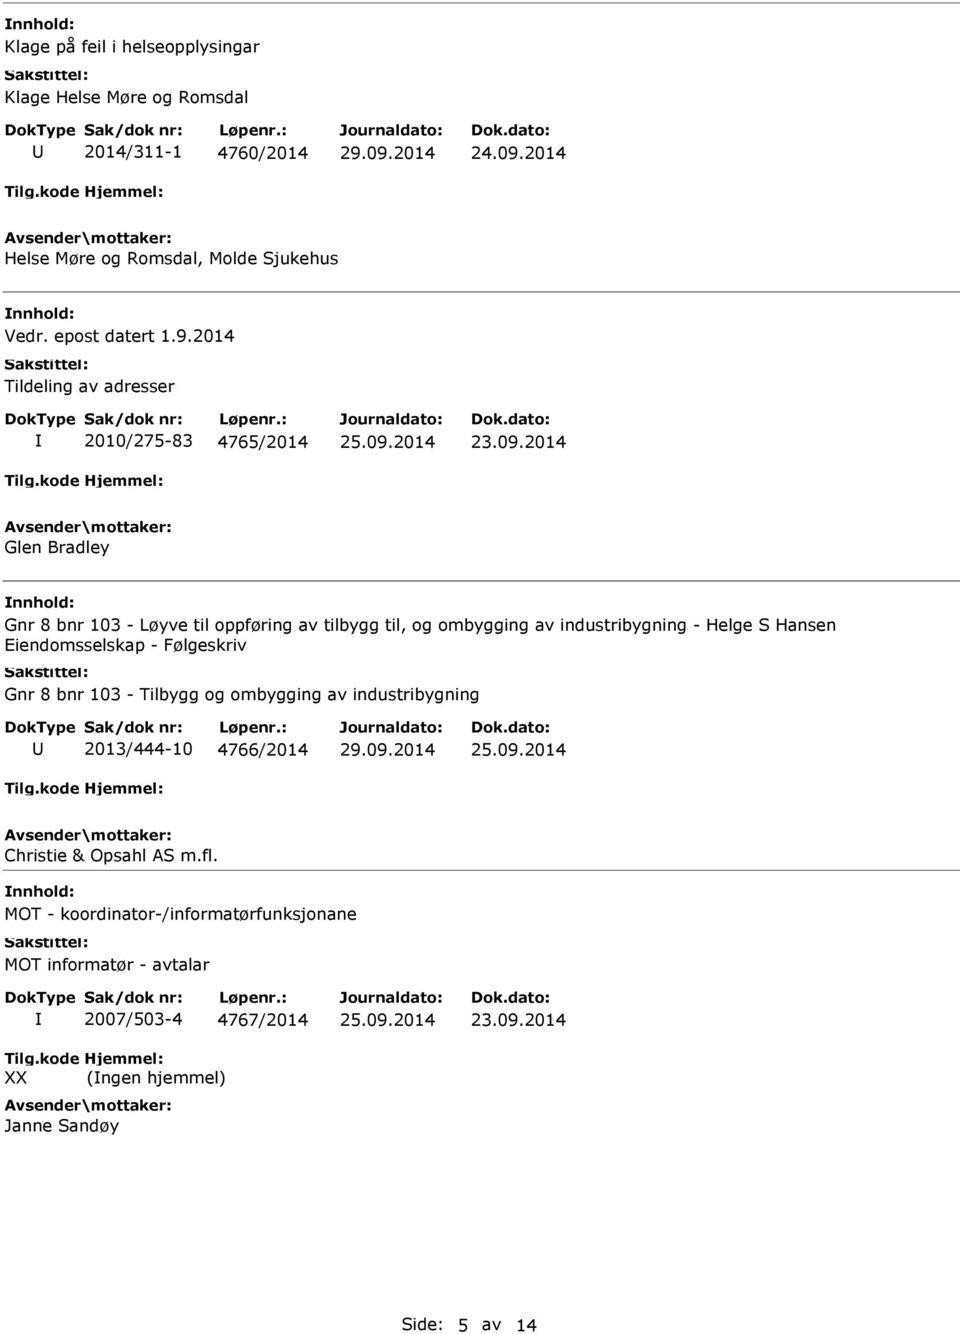 Helge S Hansen Eiendomsselskap - Følgeskriv Gnr 8 bnr 103 - Tilbygg og ombygging av industribygning 2013/444-10 4766/2014 Christie & Opsahl AS m.fl.